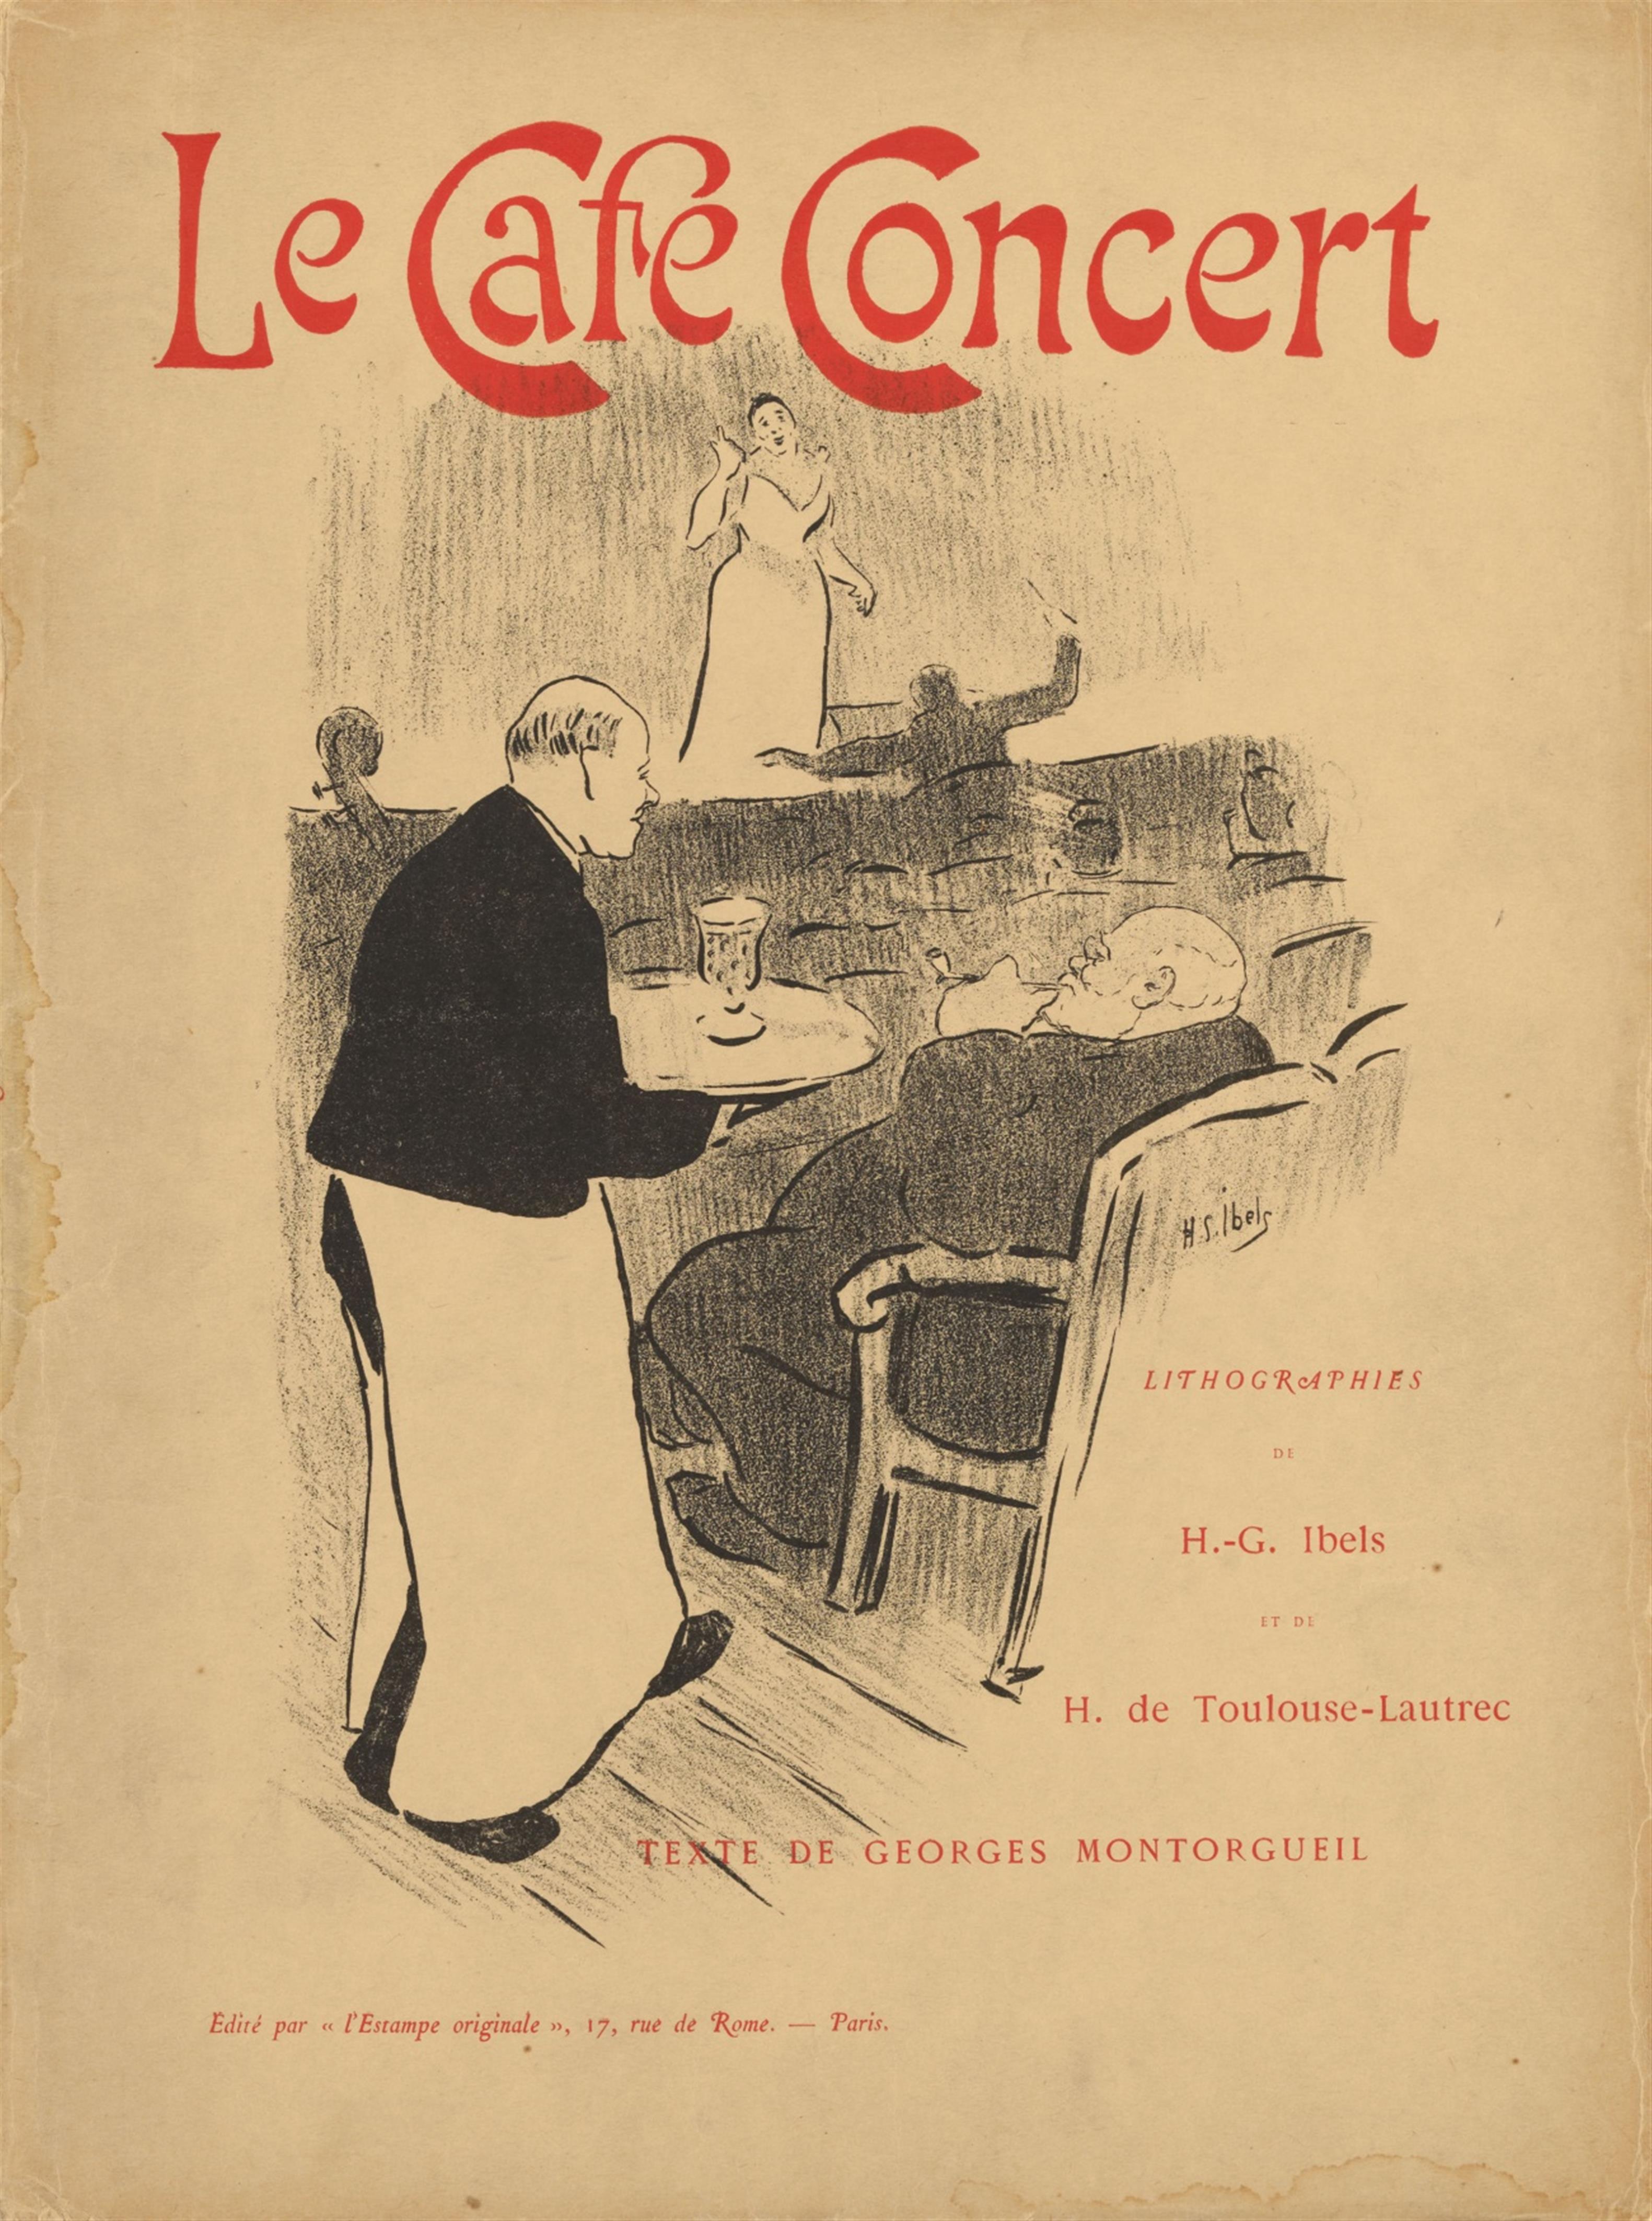 Henri de Toulouse-Lautrec
Henri-Gabriel Ibels - Le Café Concert - image-1